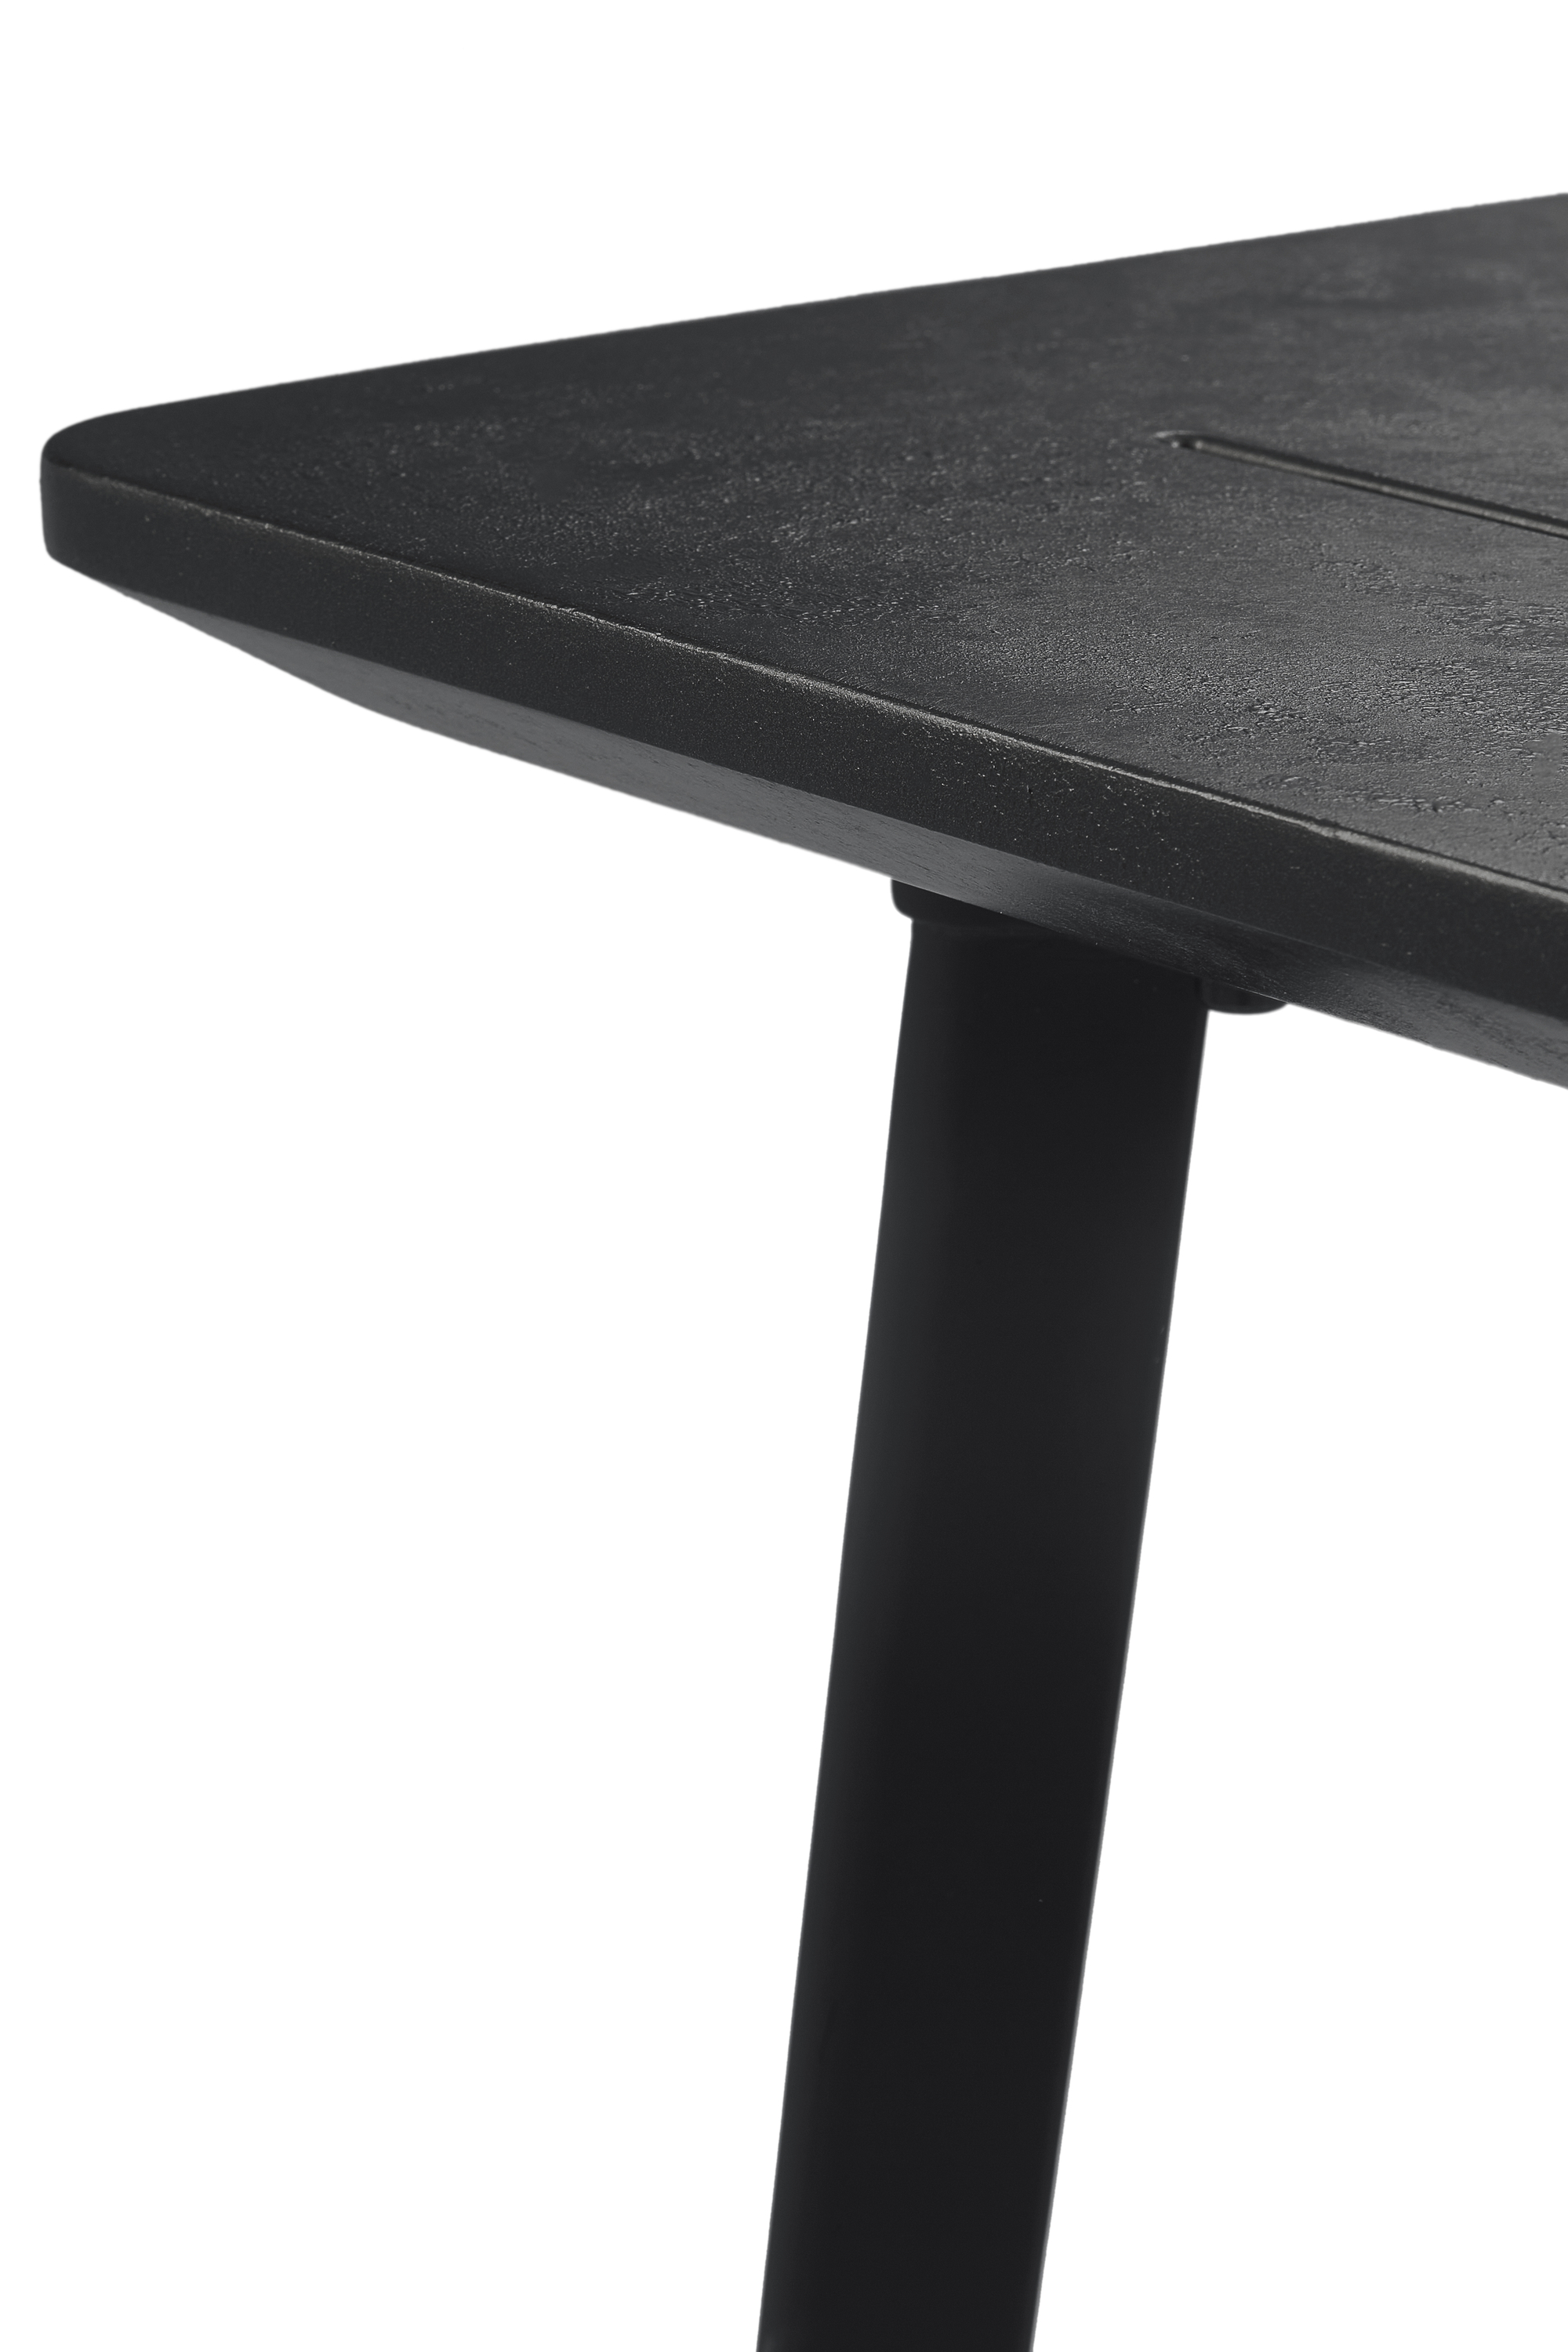 Überlegen BEST Tisch Norma24 graphit Torino 146x87cm 